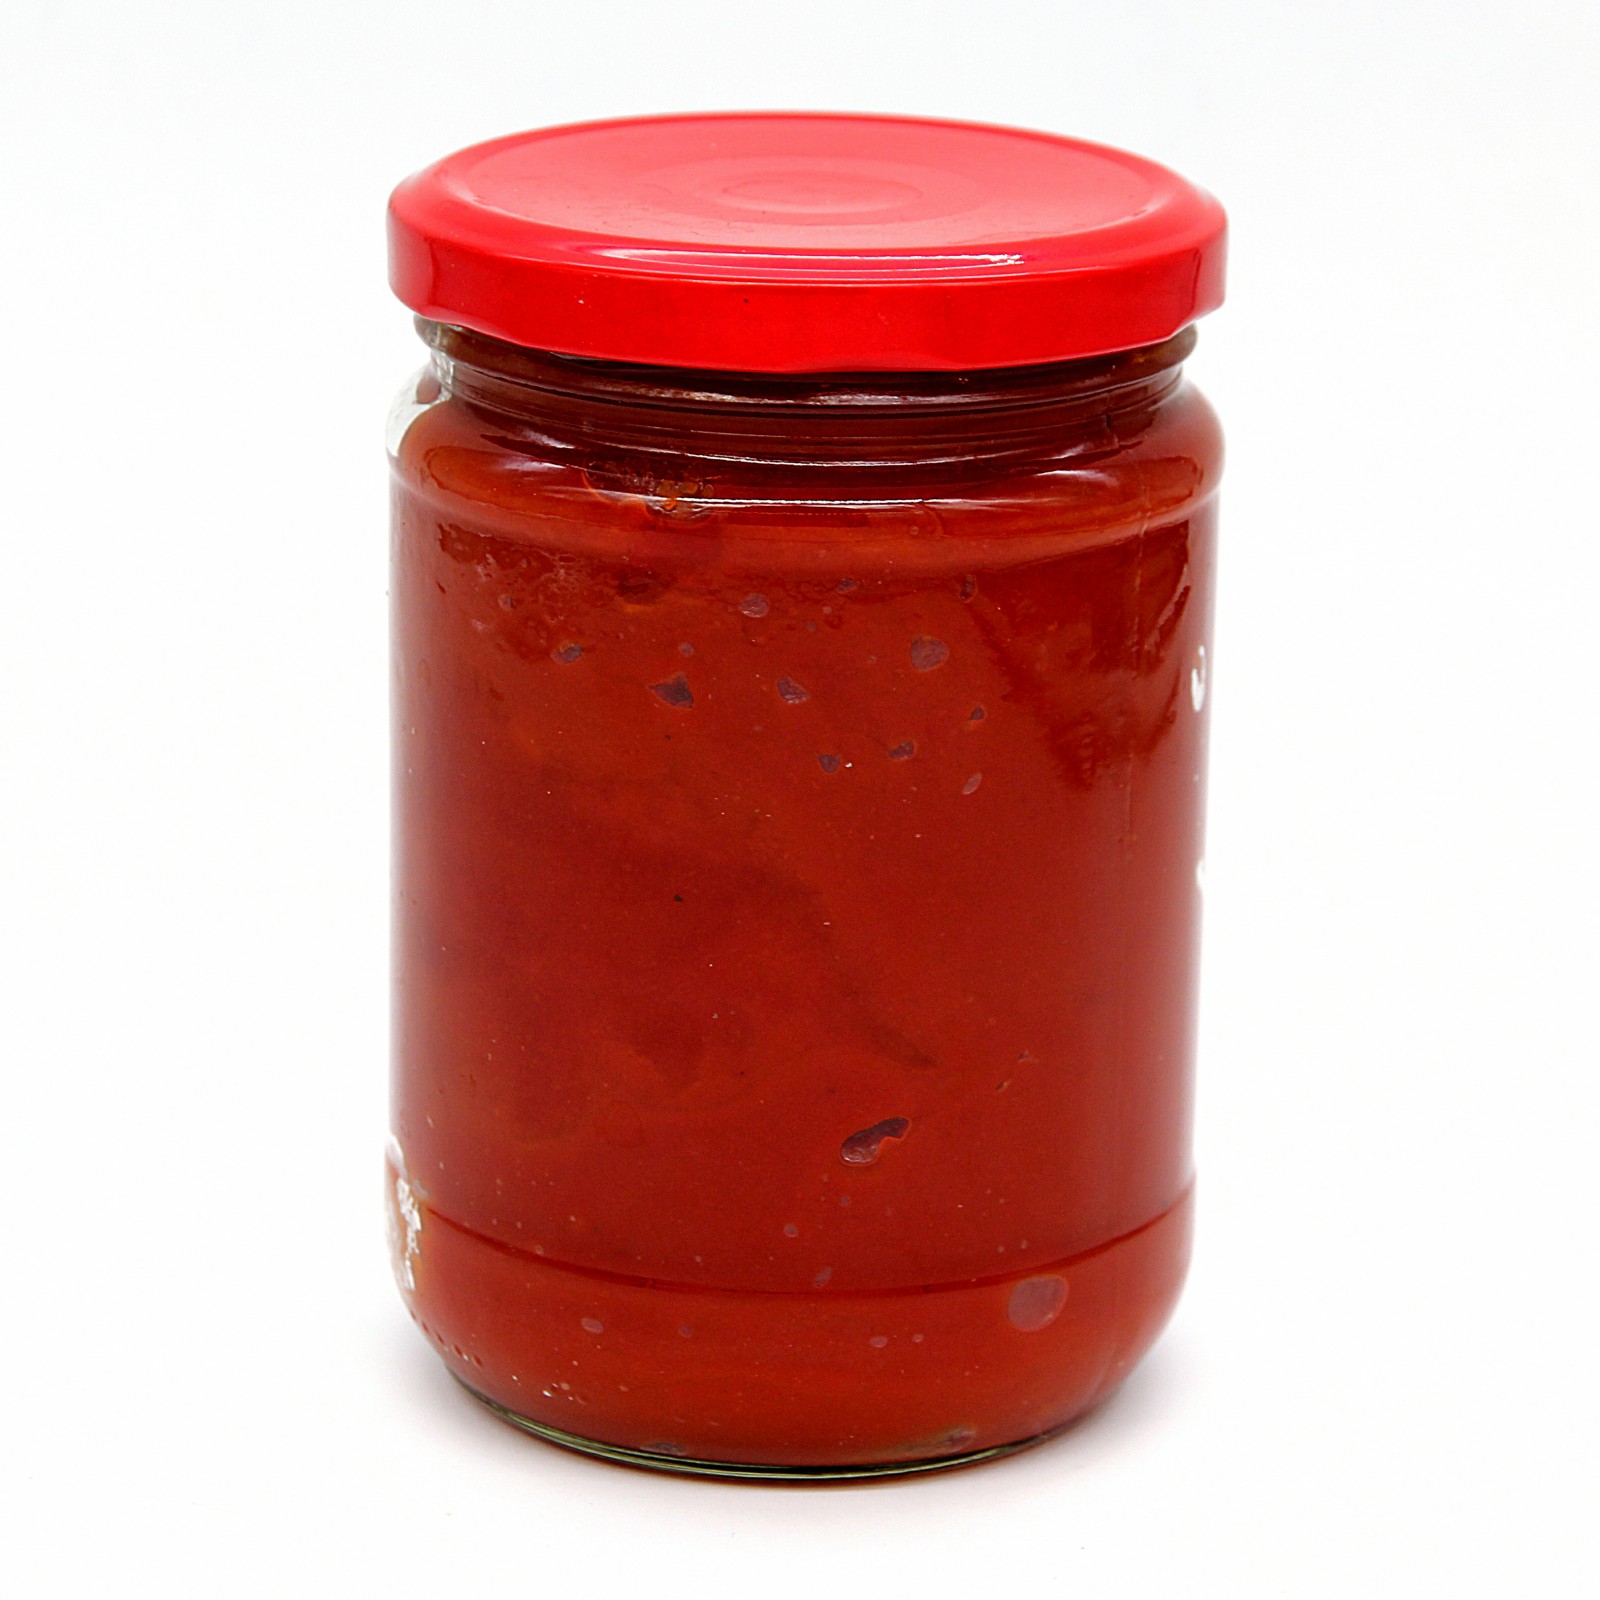 Tomato paste in glass jar 500g